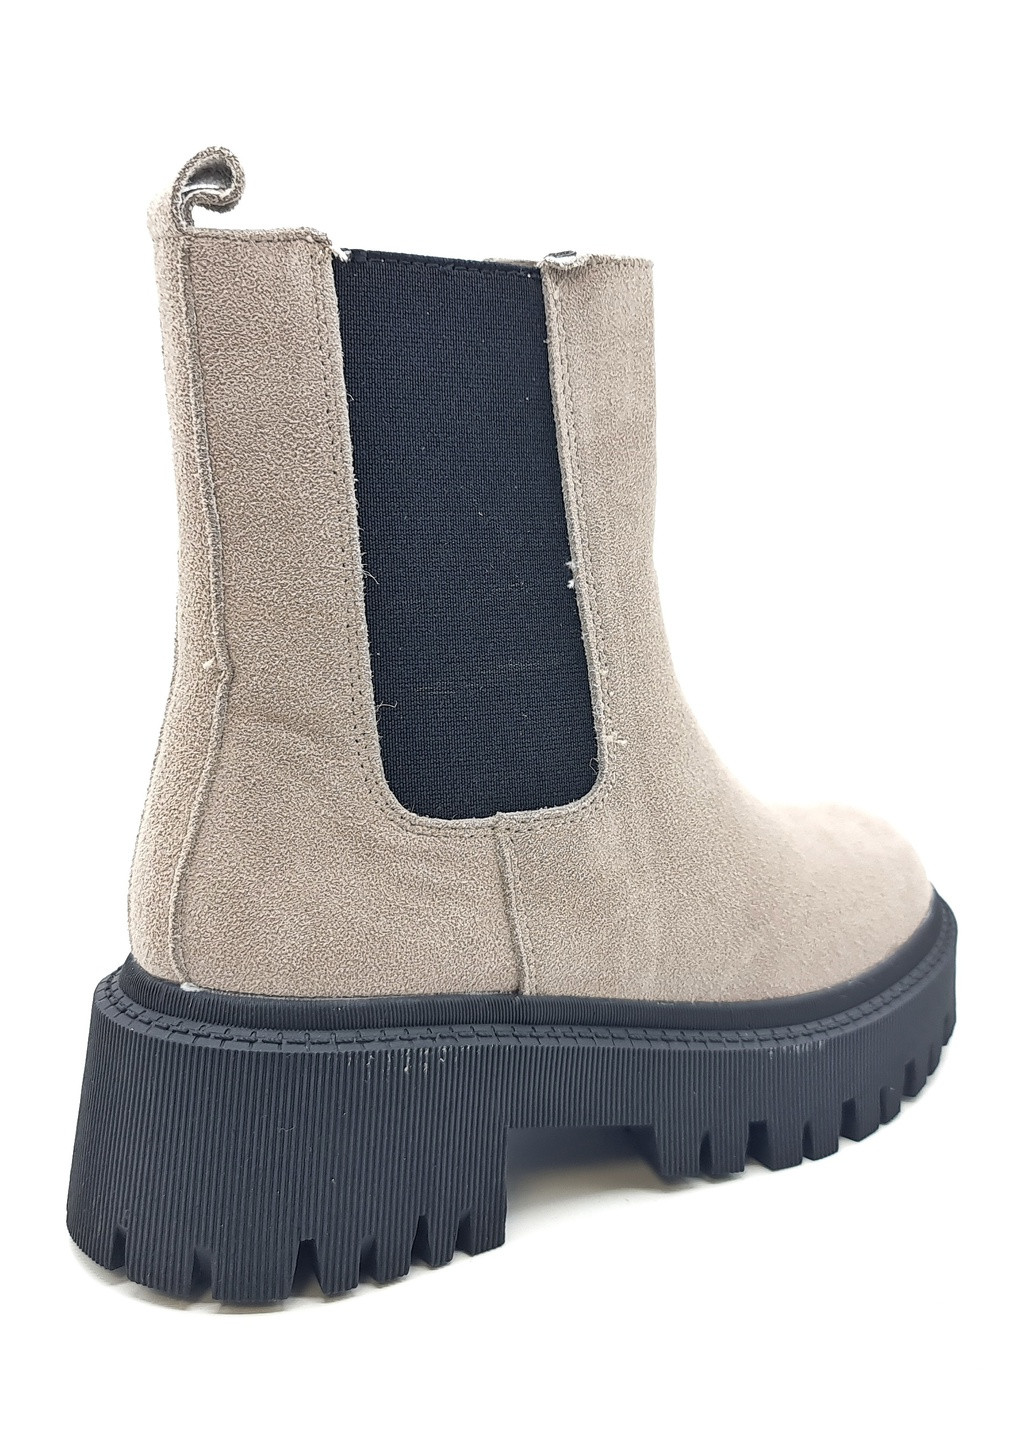 Осенние женские ботинки зимние серые замшевые ii-11-10 23,5 см (р) It is